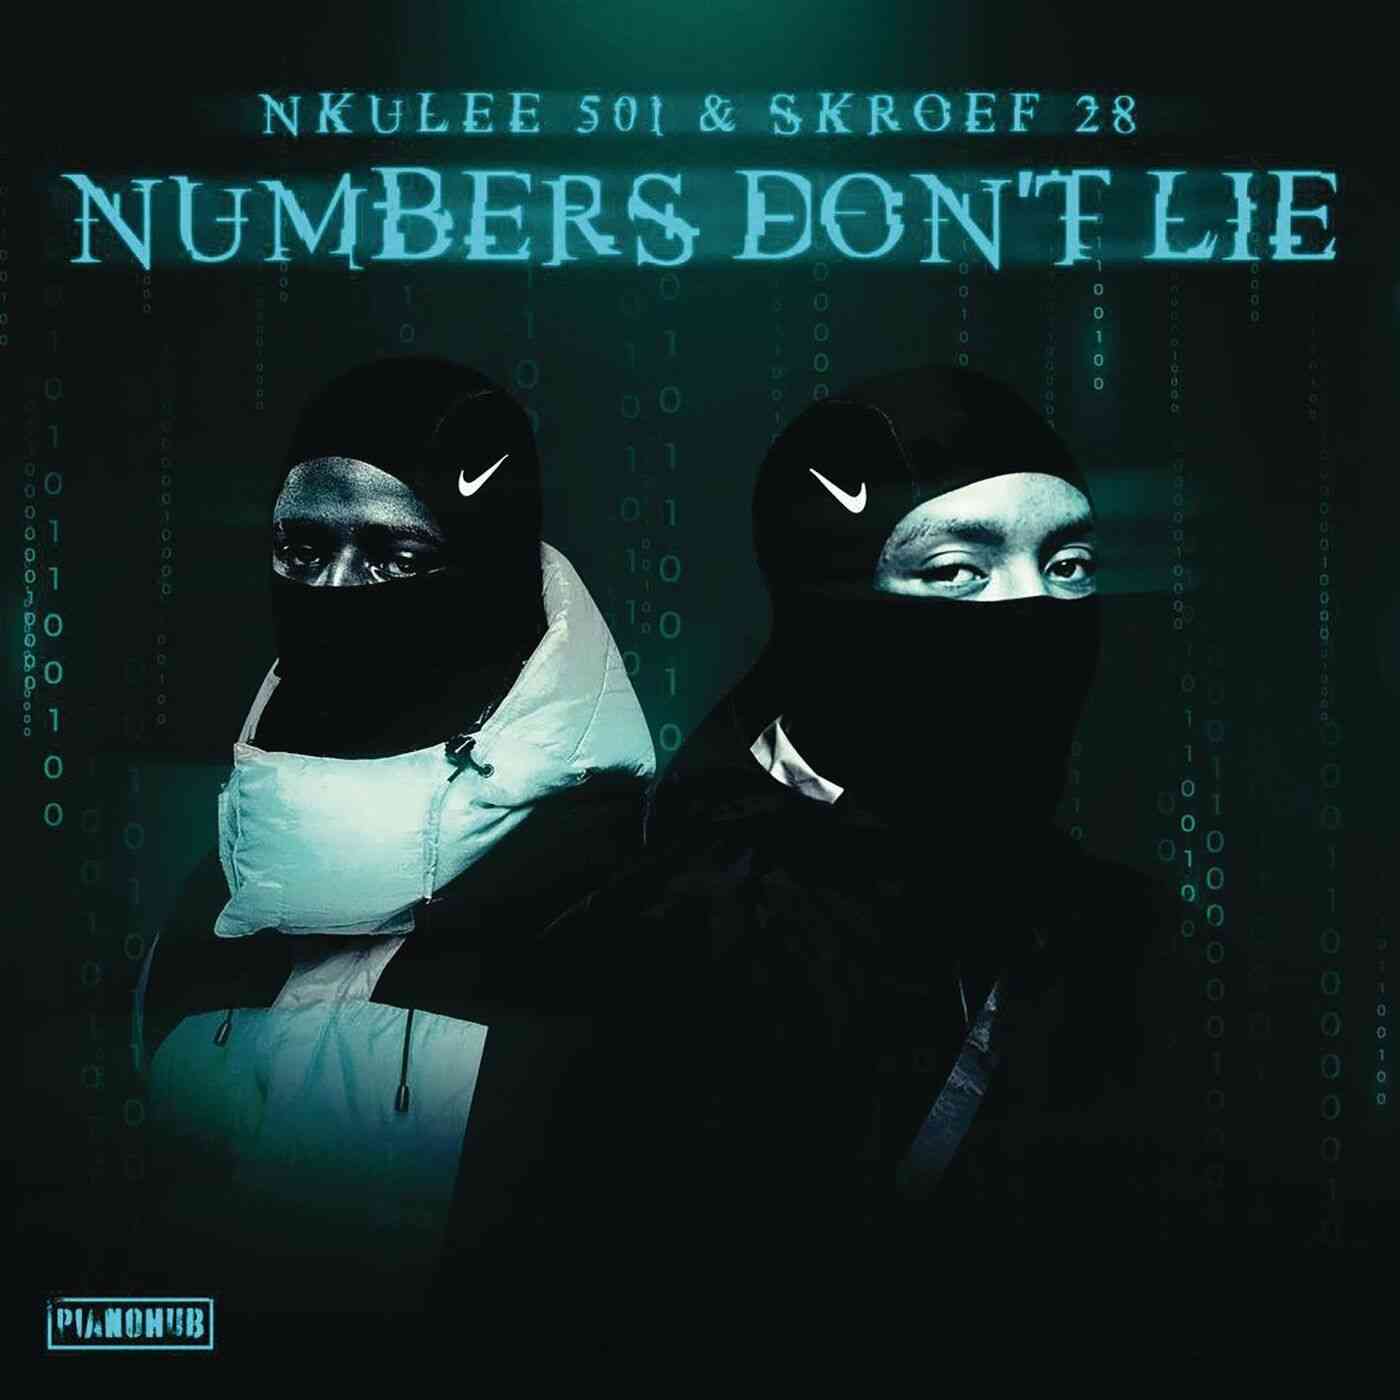 Nkulee 501 & Skroef28 - Numbers Don